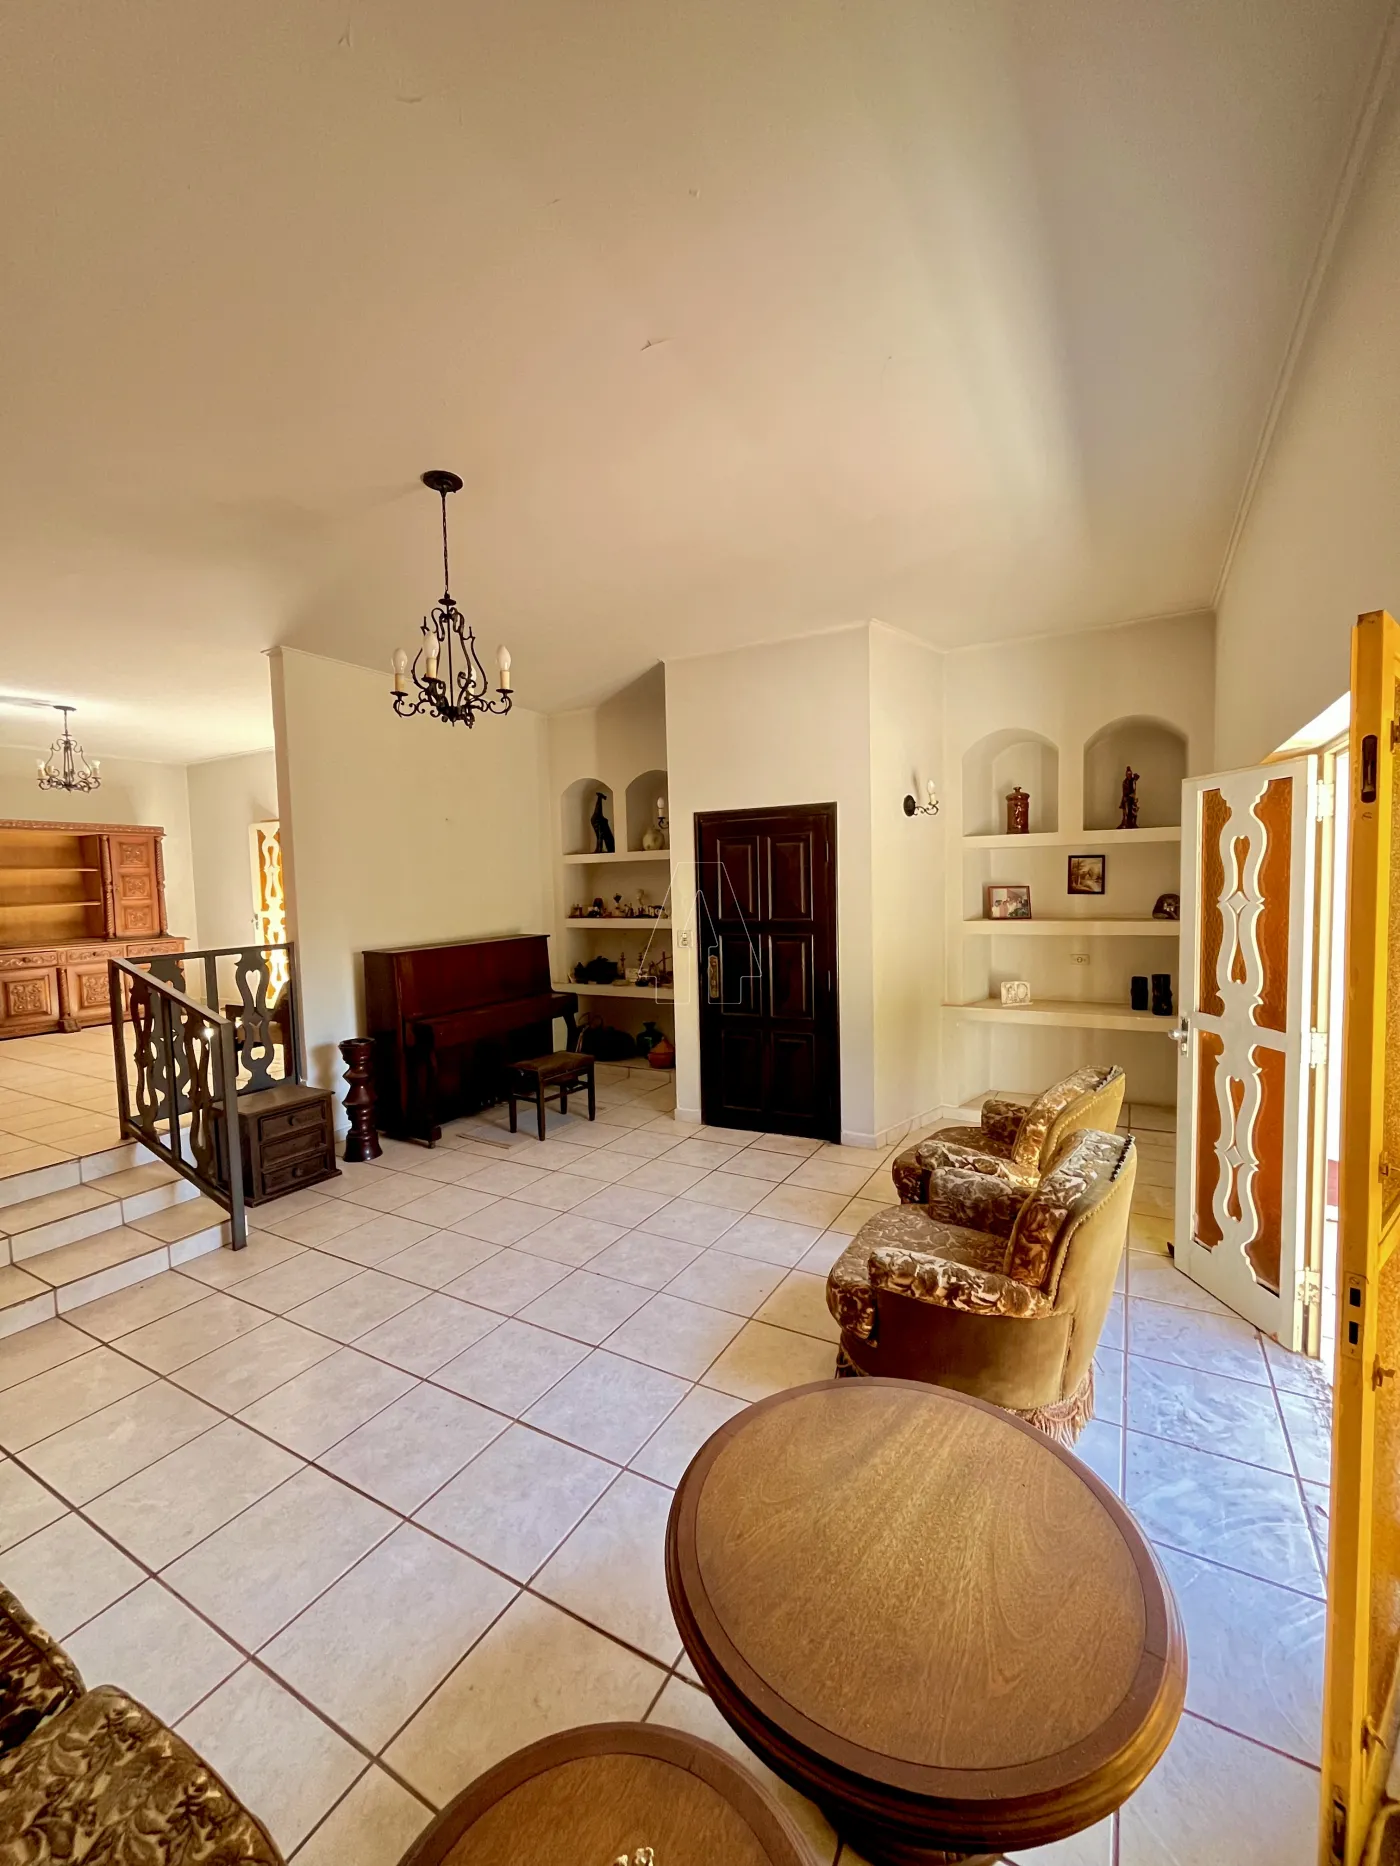 Comprar Casa / Residencial em Araçatuba R$ 750.000,00 - Foto 2